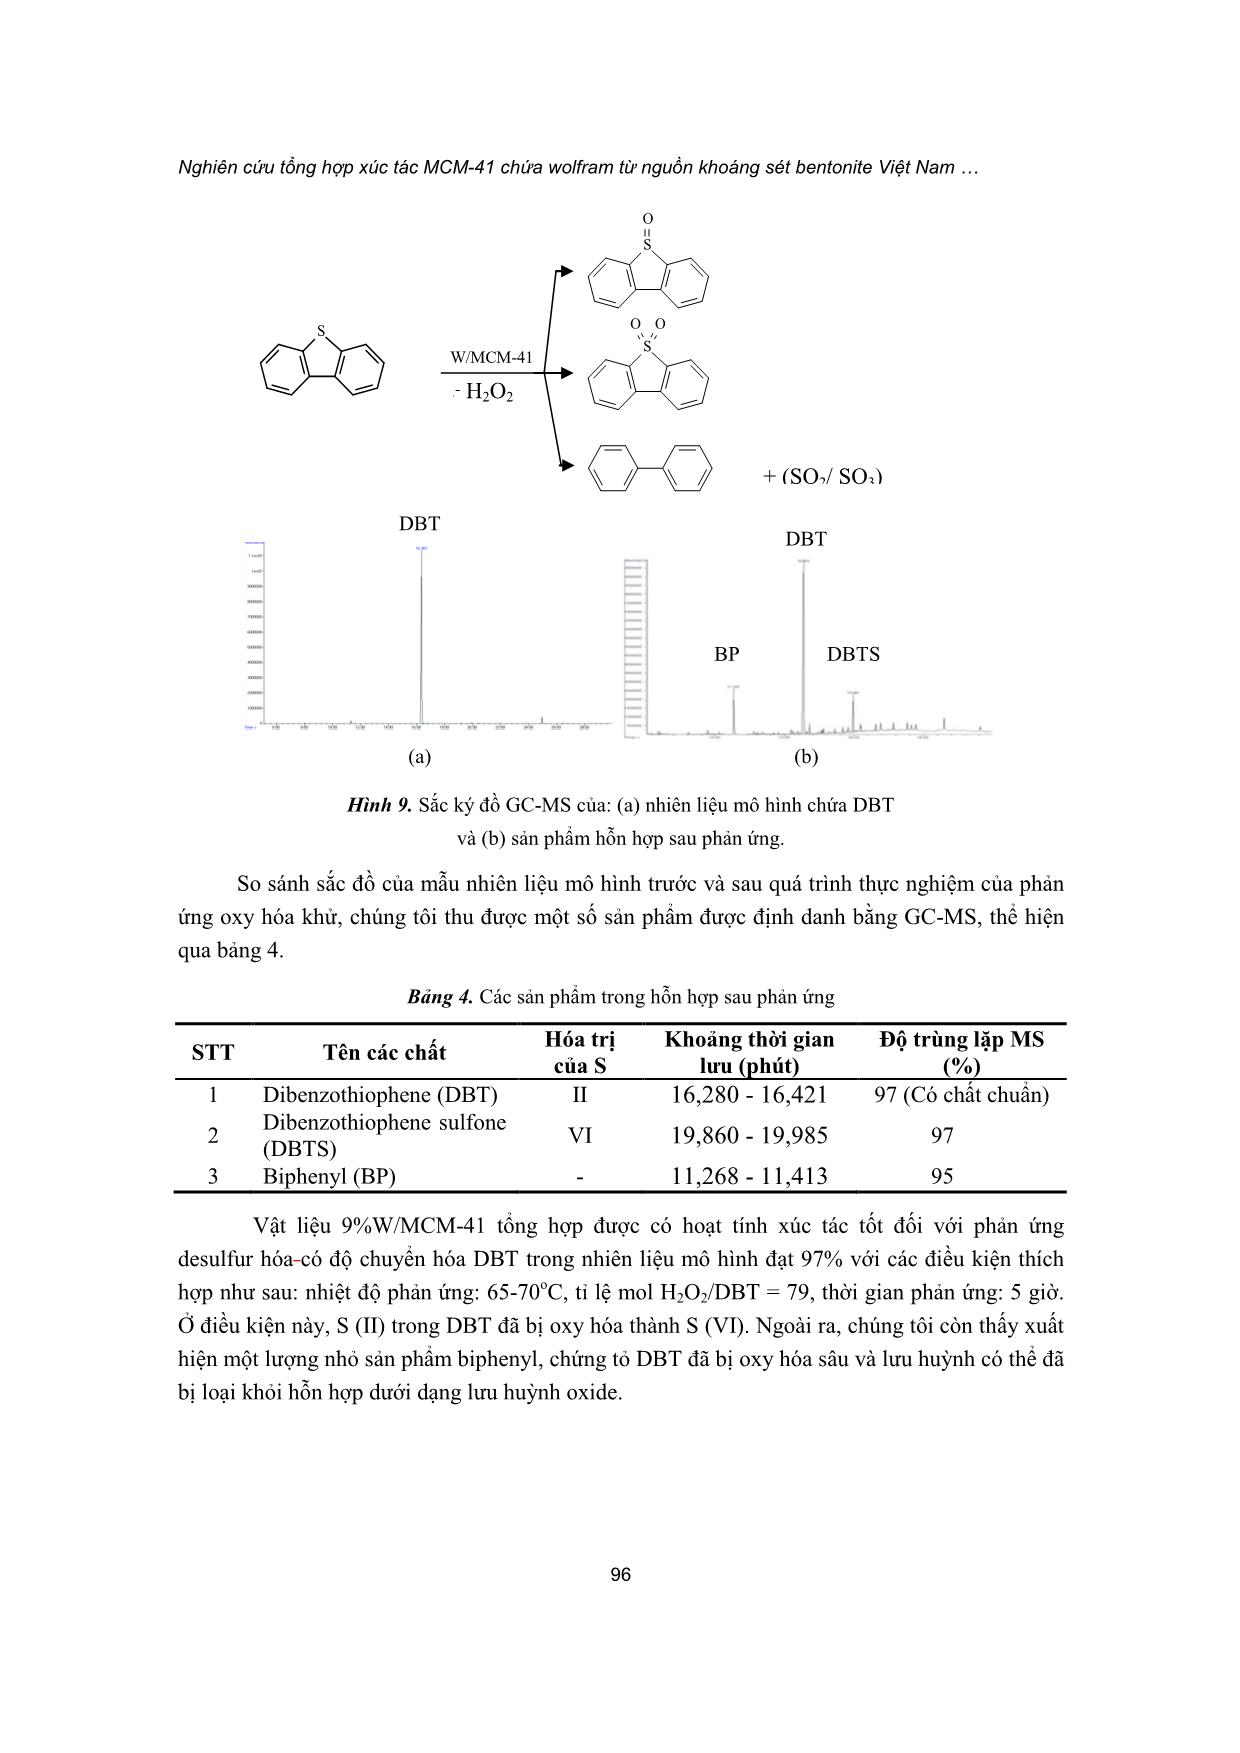 Nghiên cứu tổng hợp xúc tác MCM-41 chứa wolfram từ nguồn khoáng sét bentonite Việt Nam cho phản ứng desulfur hóa nhiên liệu trang 10